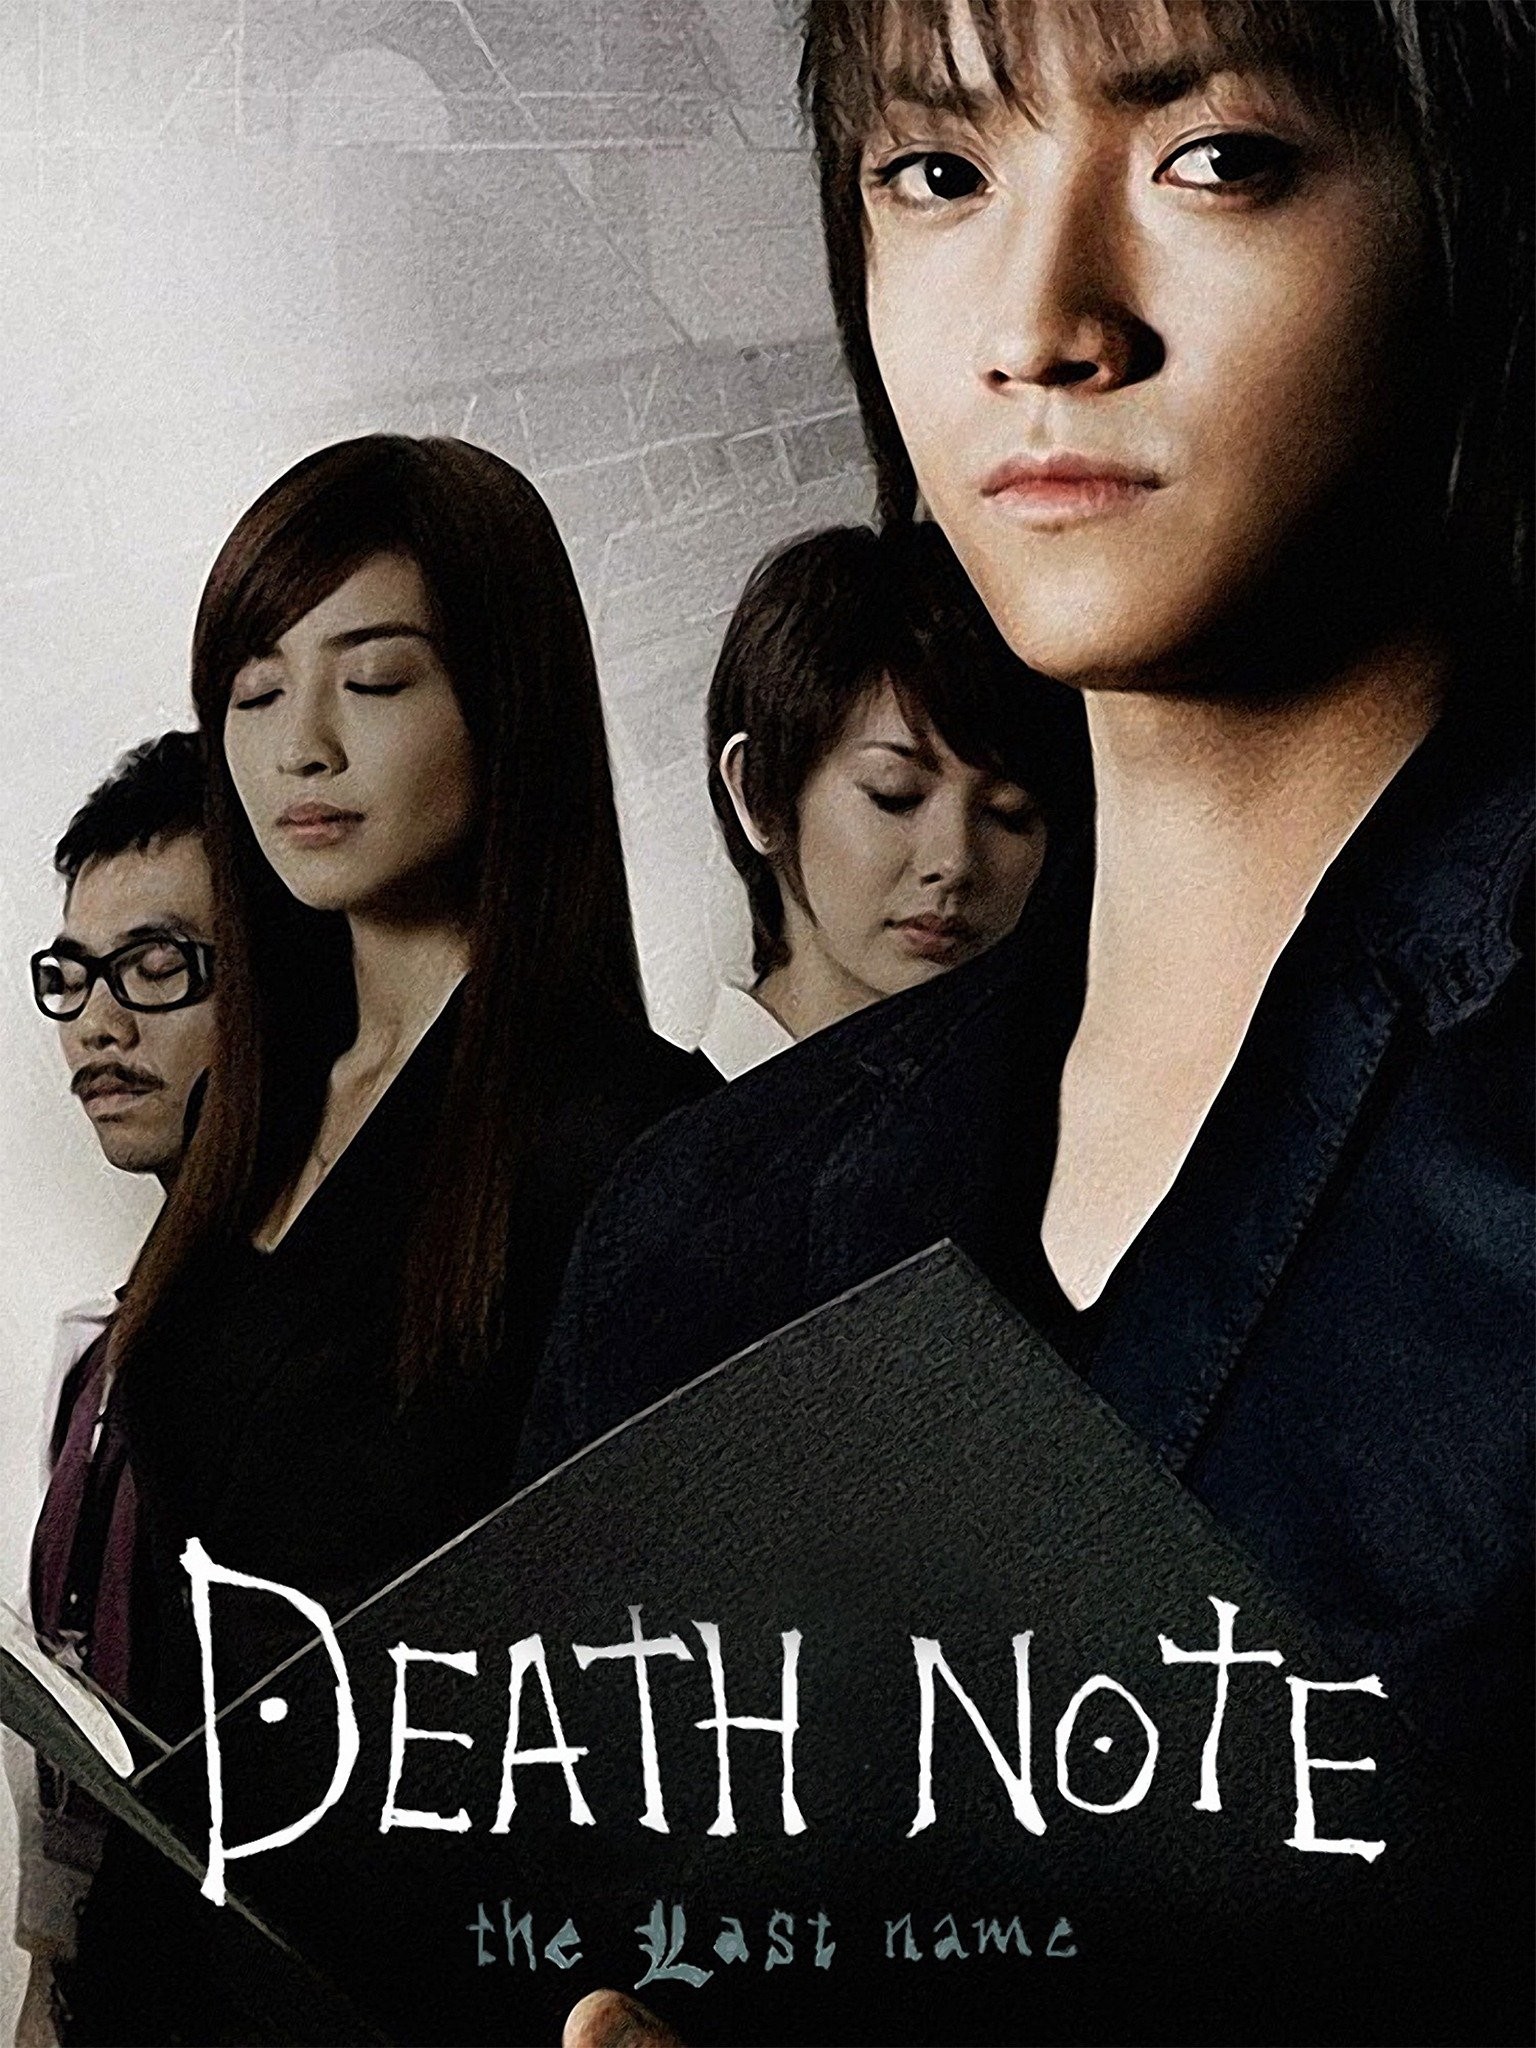 Filme live-action de Death Note, da Netflix, deve ganhar continuação